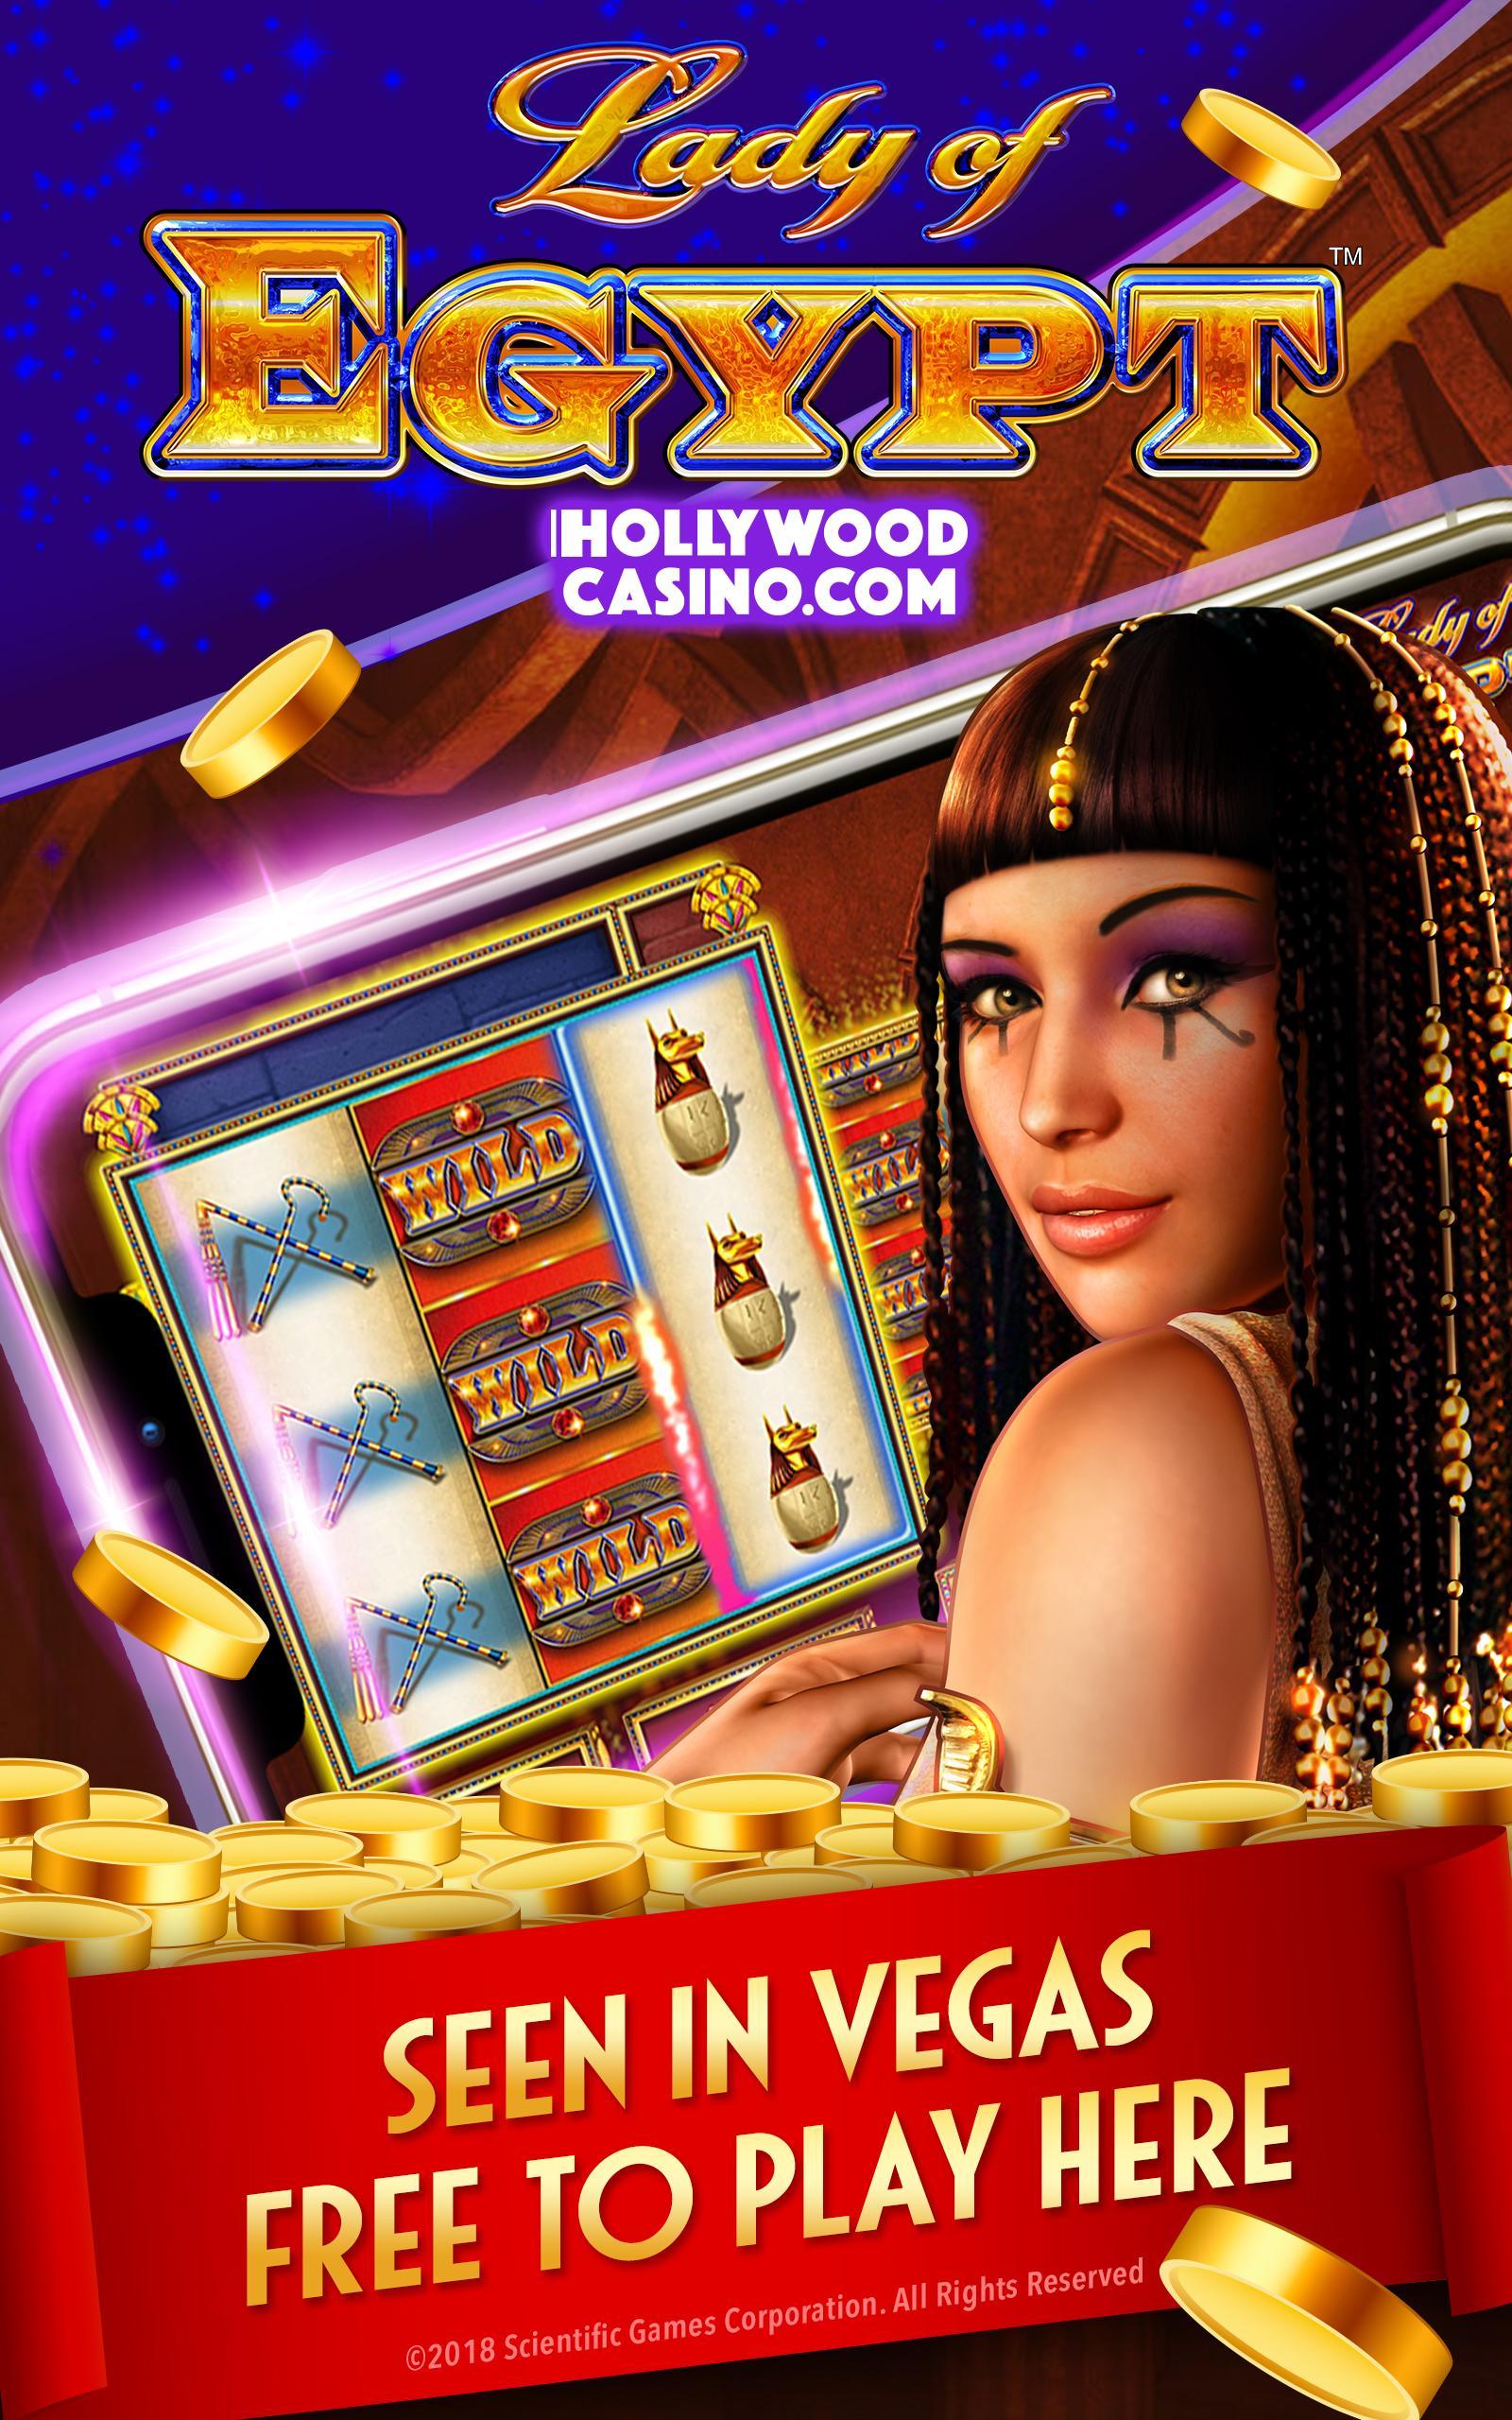 Download Casino Slot Machines